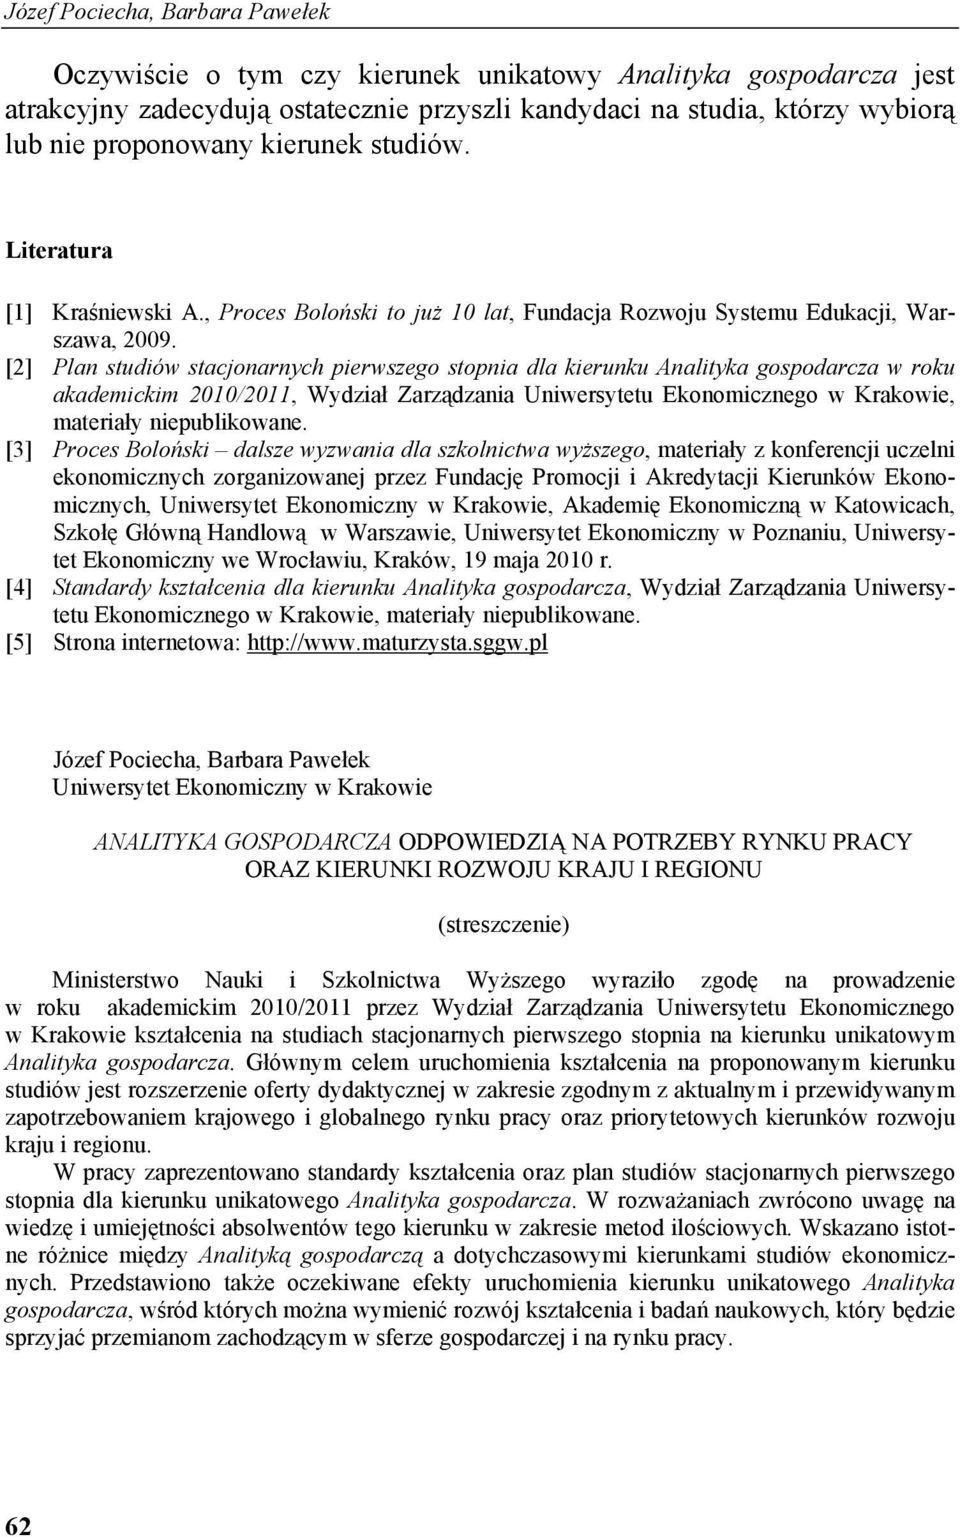 [2] Plan studiów stacjonarnych pierwszego stopnia dla kierunku Analityka gospodarcza w roku akademickim 2010/2011, Wydział Zarządzania Uniwersytetu Ekonomicznego w Krakowie, materiały niepublikowane.